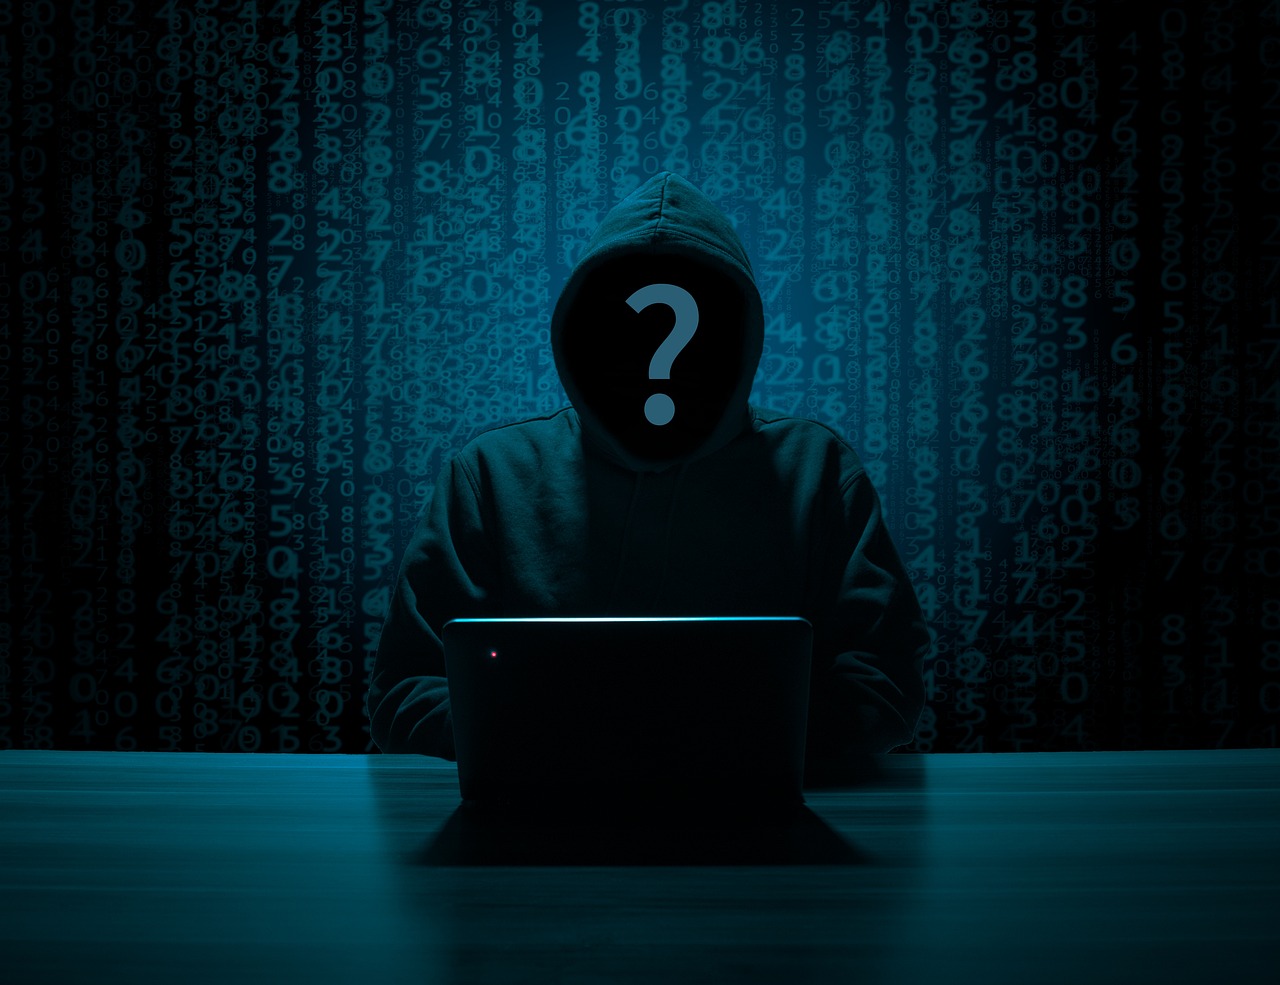 Un grupo de hackers logra vulnerar la seguridad de empresas y medios de comunicación israelíes. Foto: B A/Pixabay.